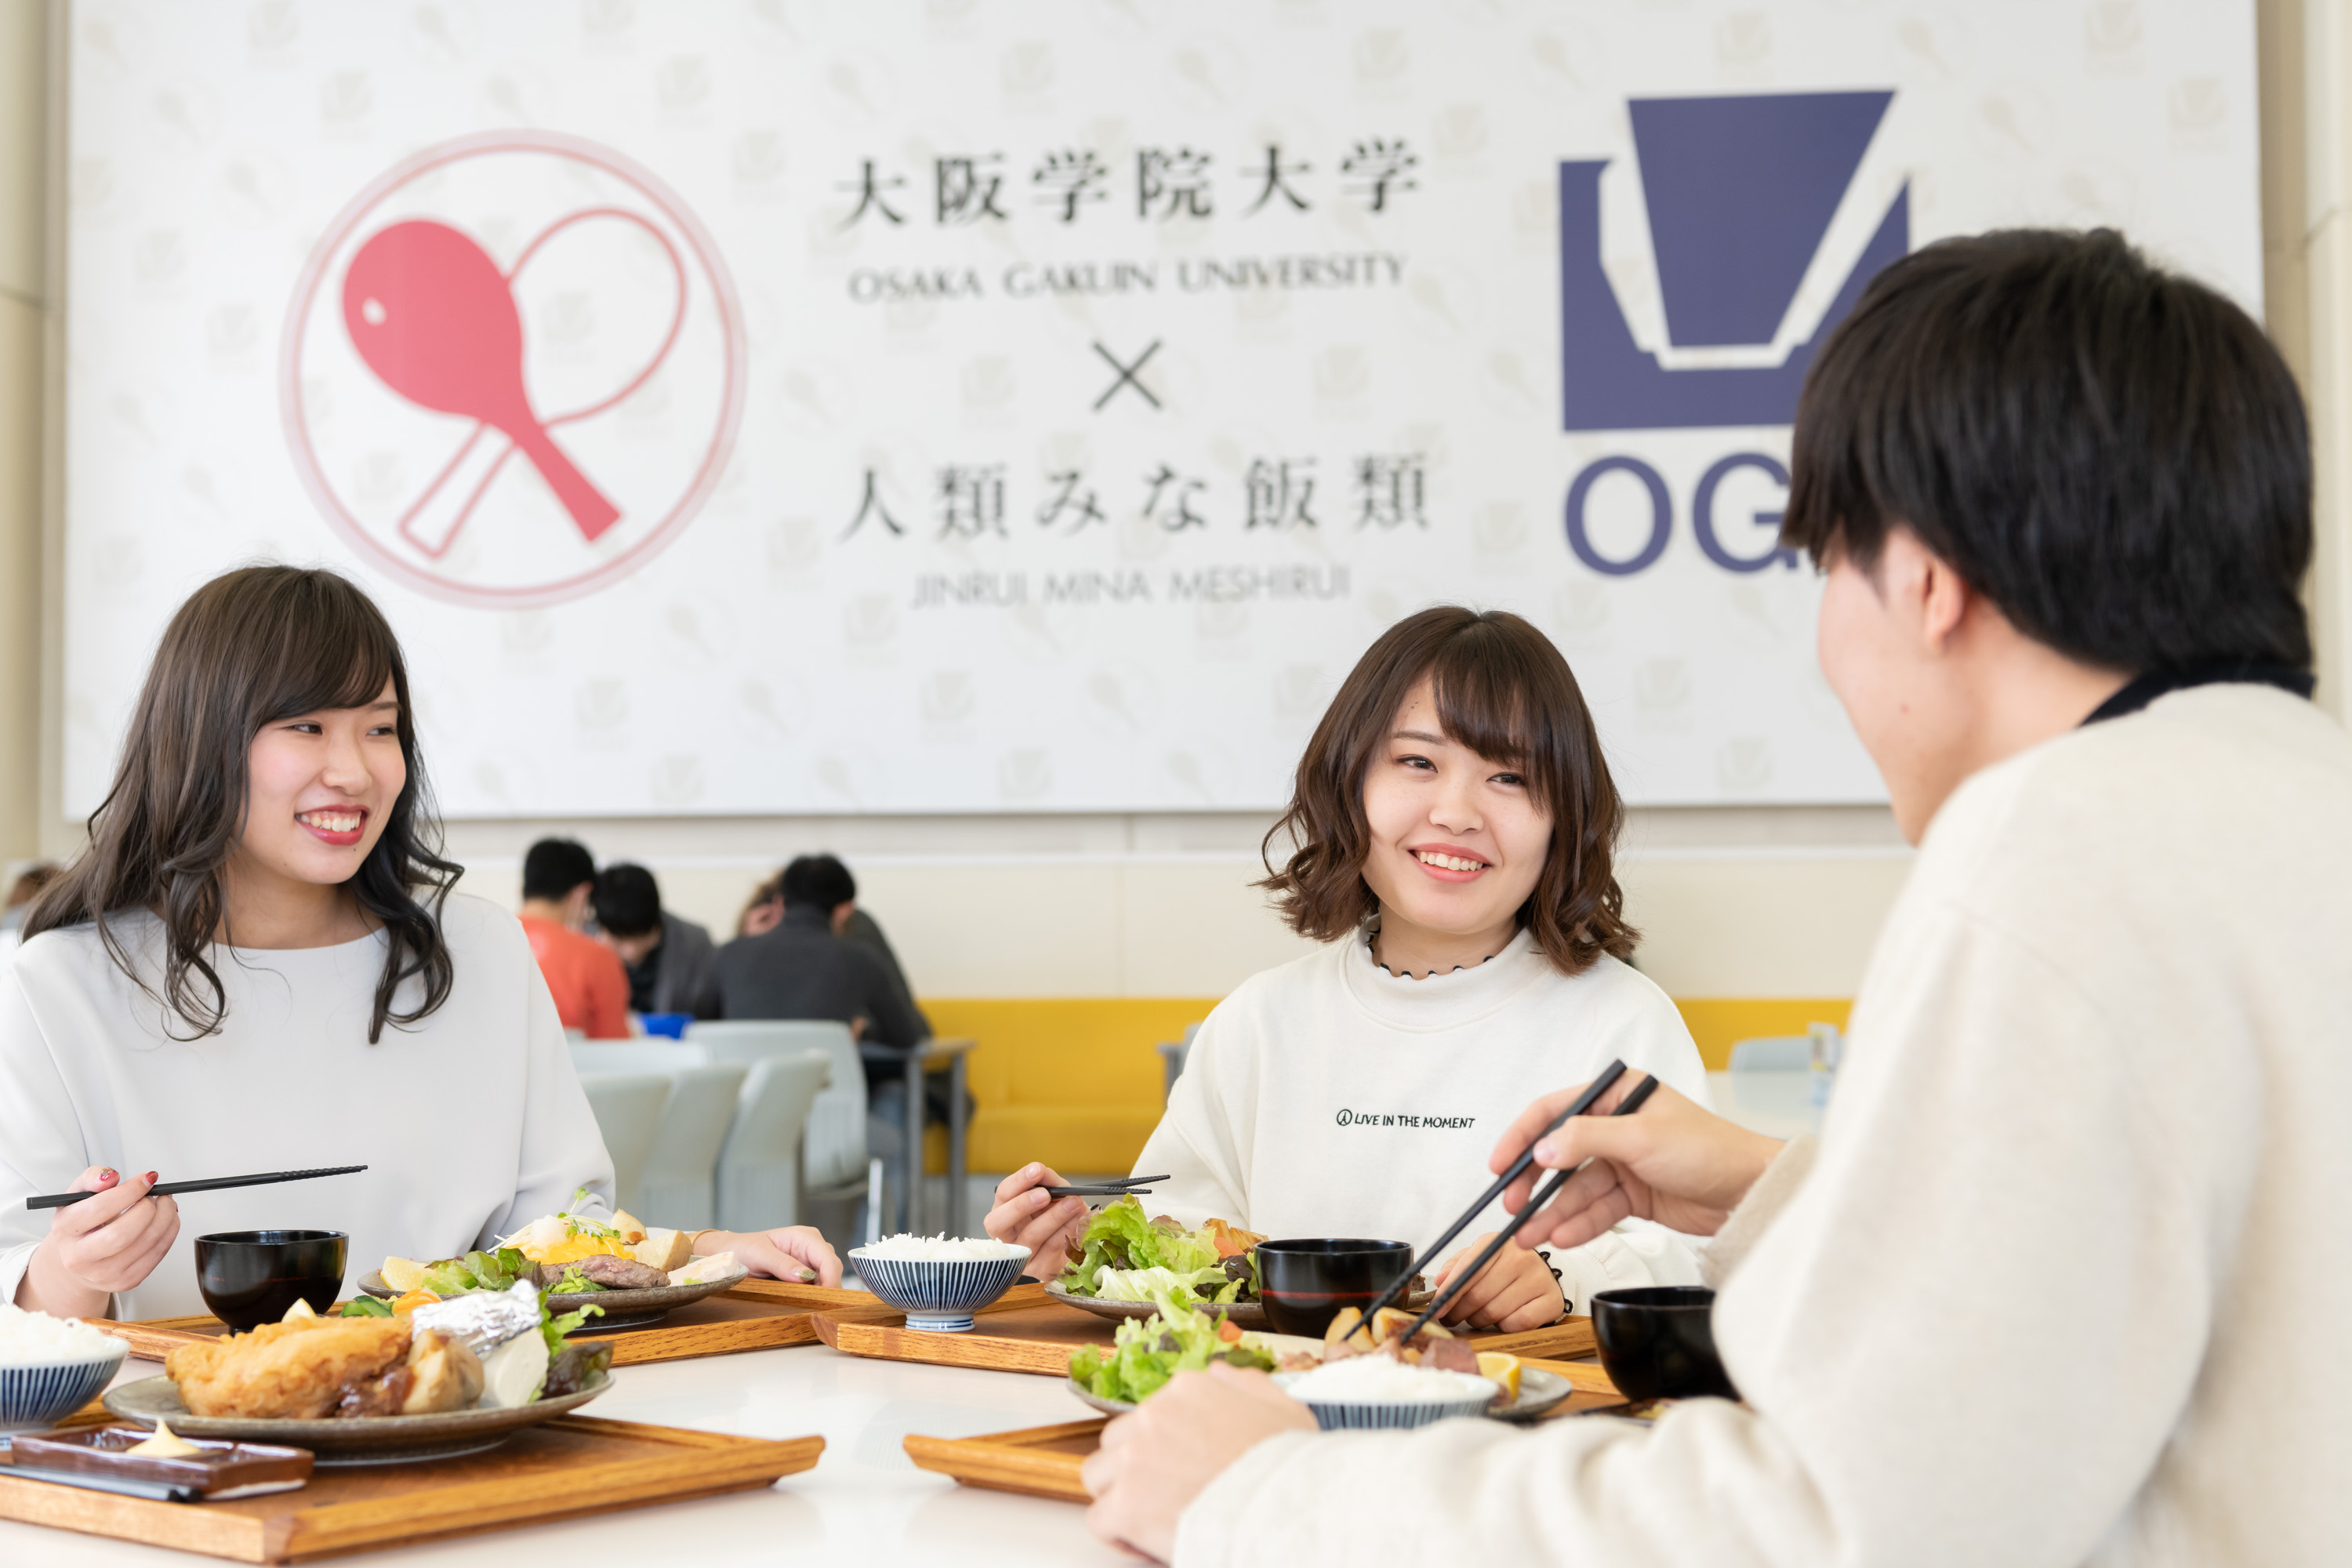 人気ラーメン店を展開するobが大阪学院大学の学生食堂をプロデュース 大学ジャーナルオンライン